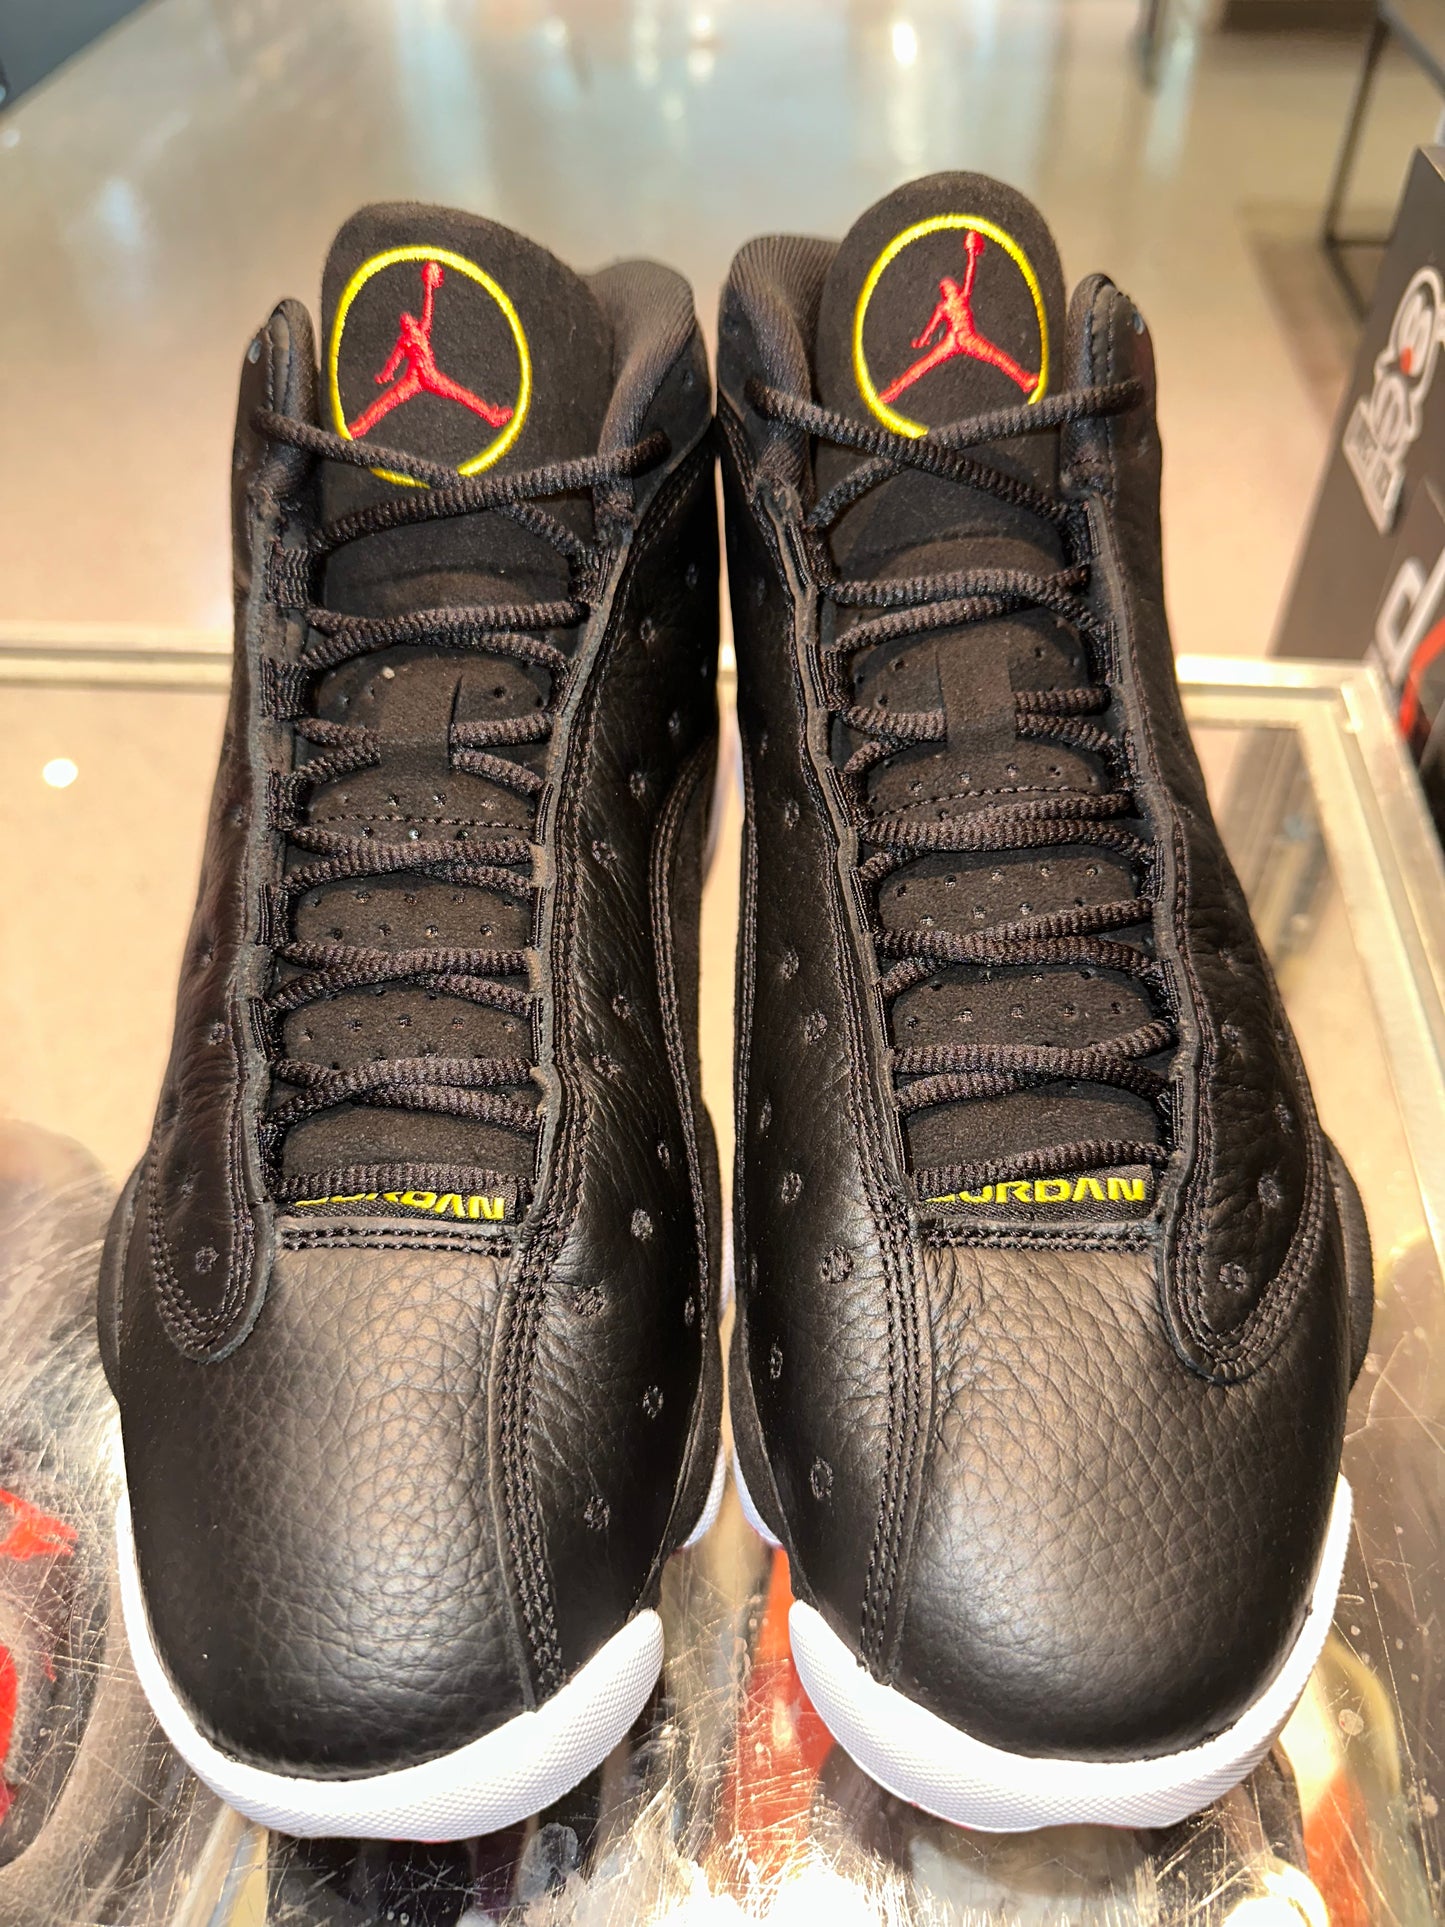 Size 8 Air Jordan 13 “Playoffs” Brand New (Mall)